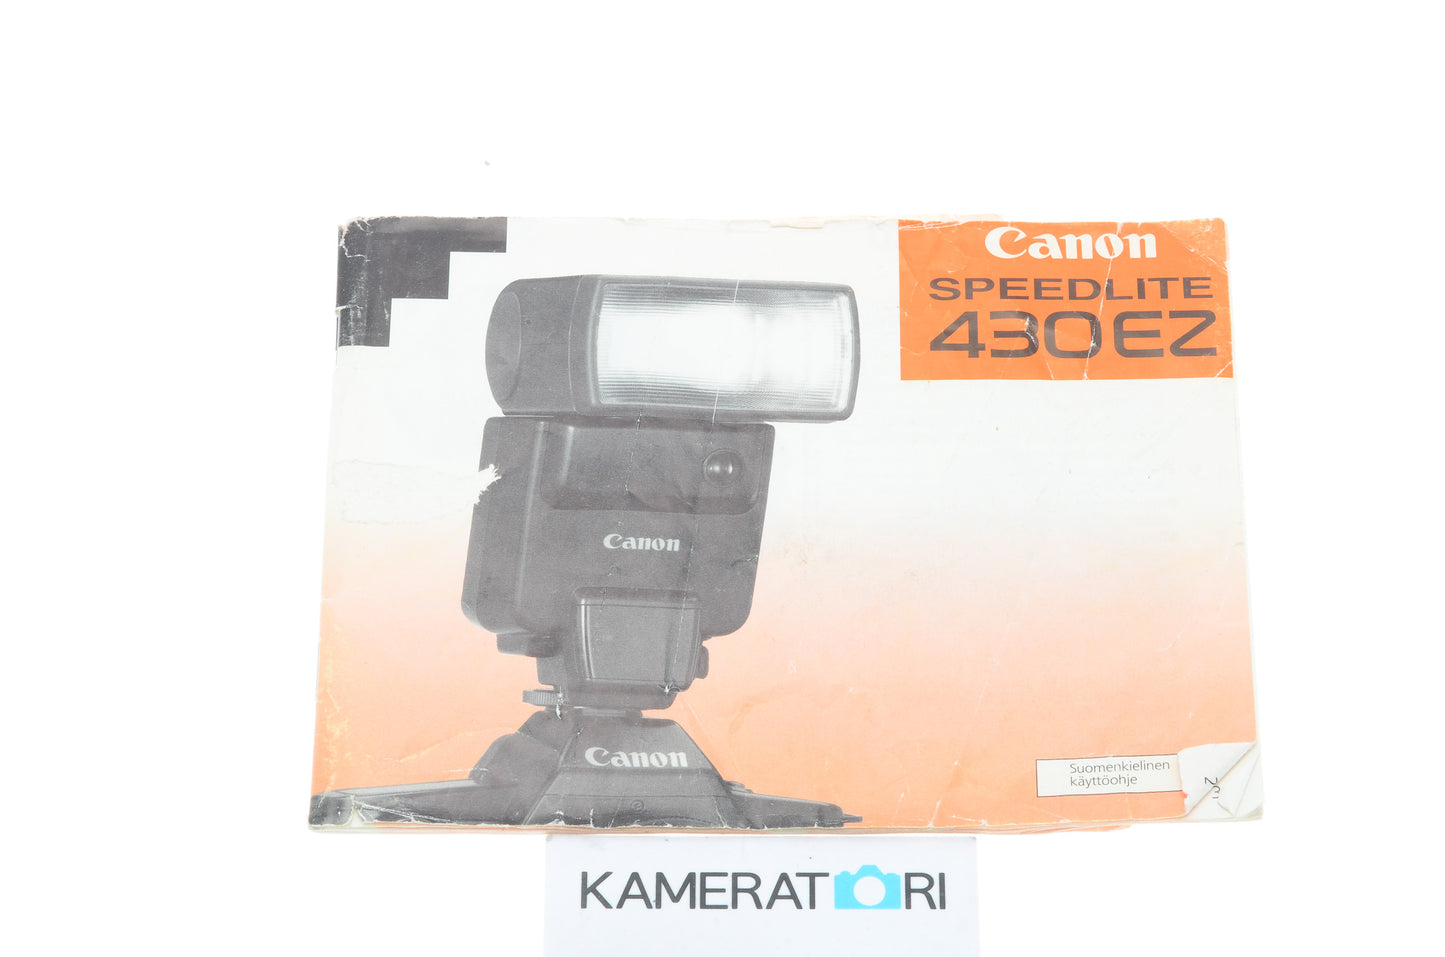 Canon 430EZ Speedlite Instructions